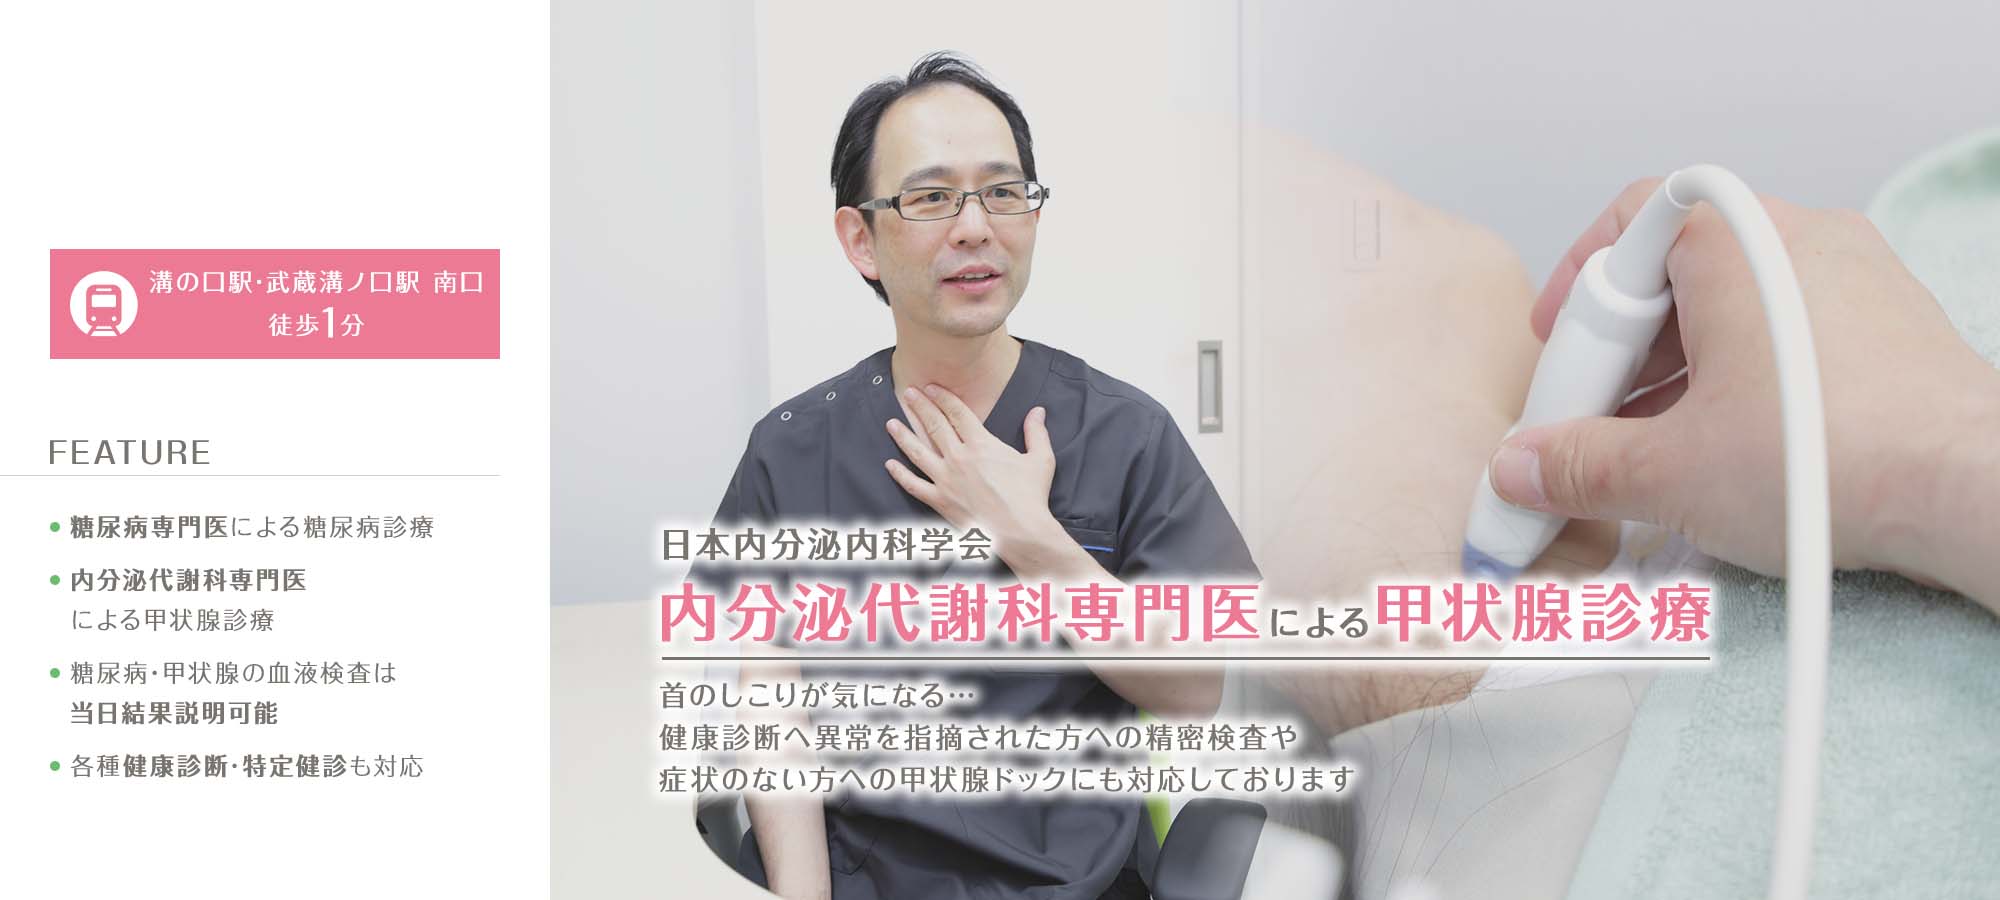 日本内分泌内科学会内分泌代謝科専門医による甲状腺診療 首のしこりが気になる…健康診断へ異常を指摘された方への精密検査や症状のない方への甲状腺ドックにも対応しております